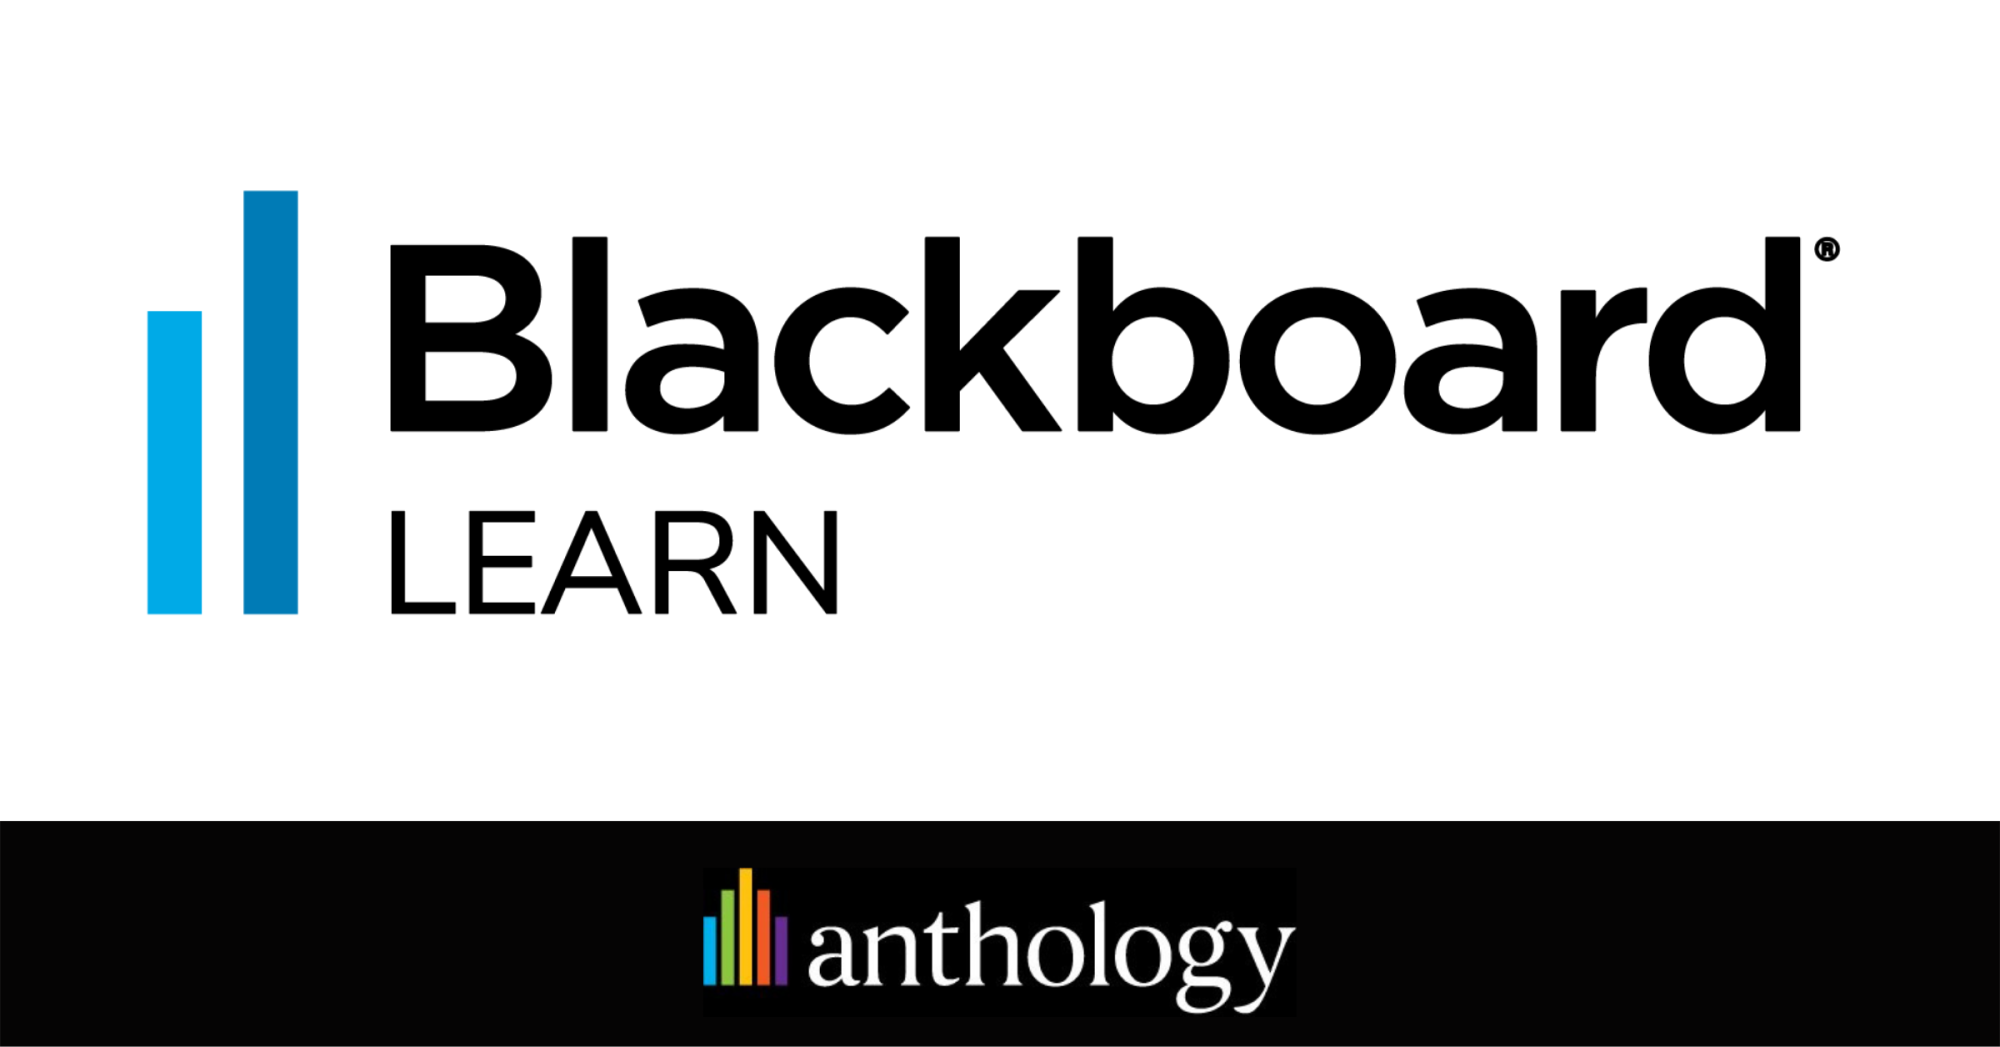 blackboard logo png